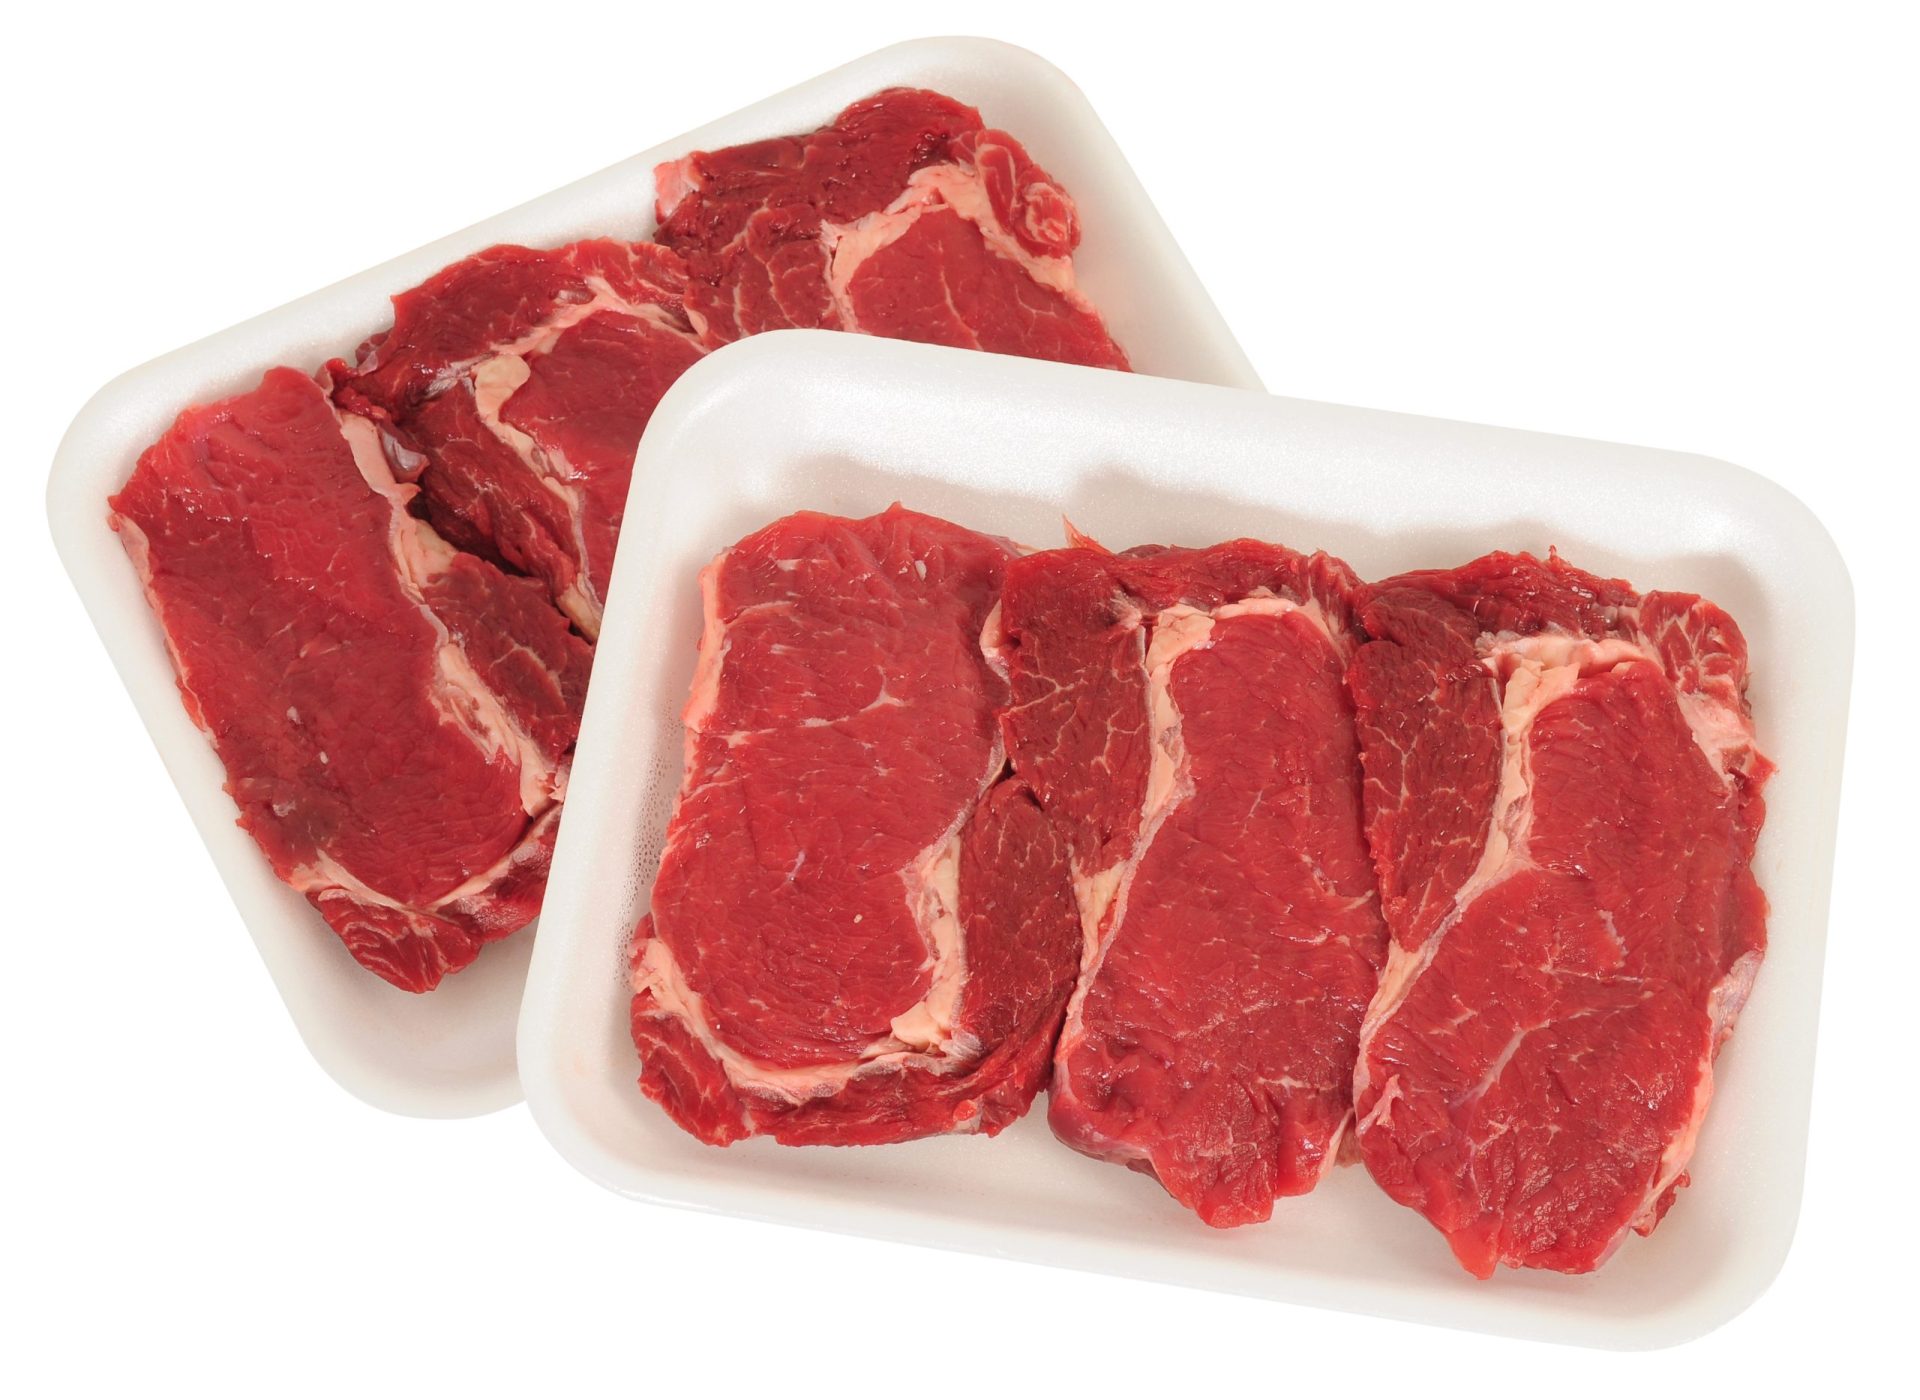 Vendas de carne sofreram quebra de 5% em apenas um mês